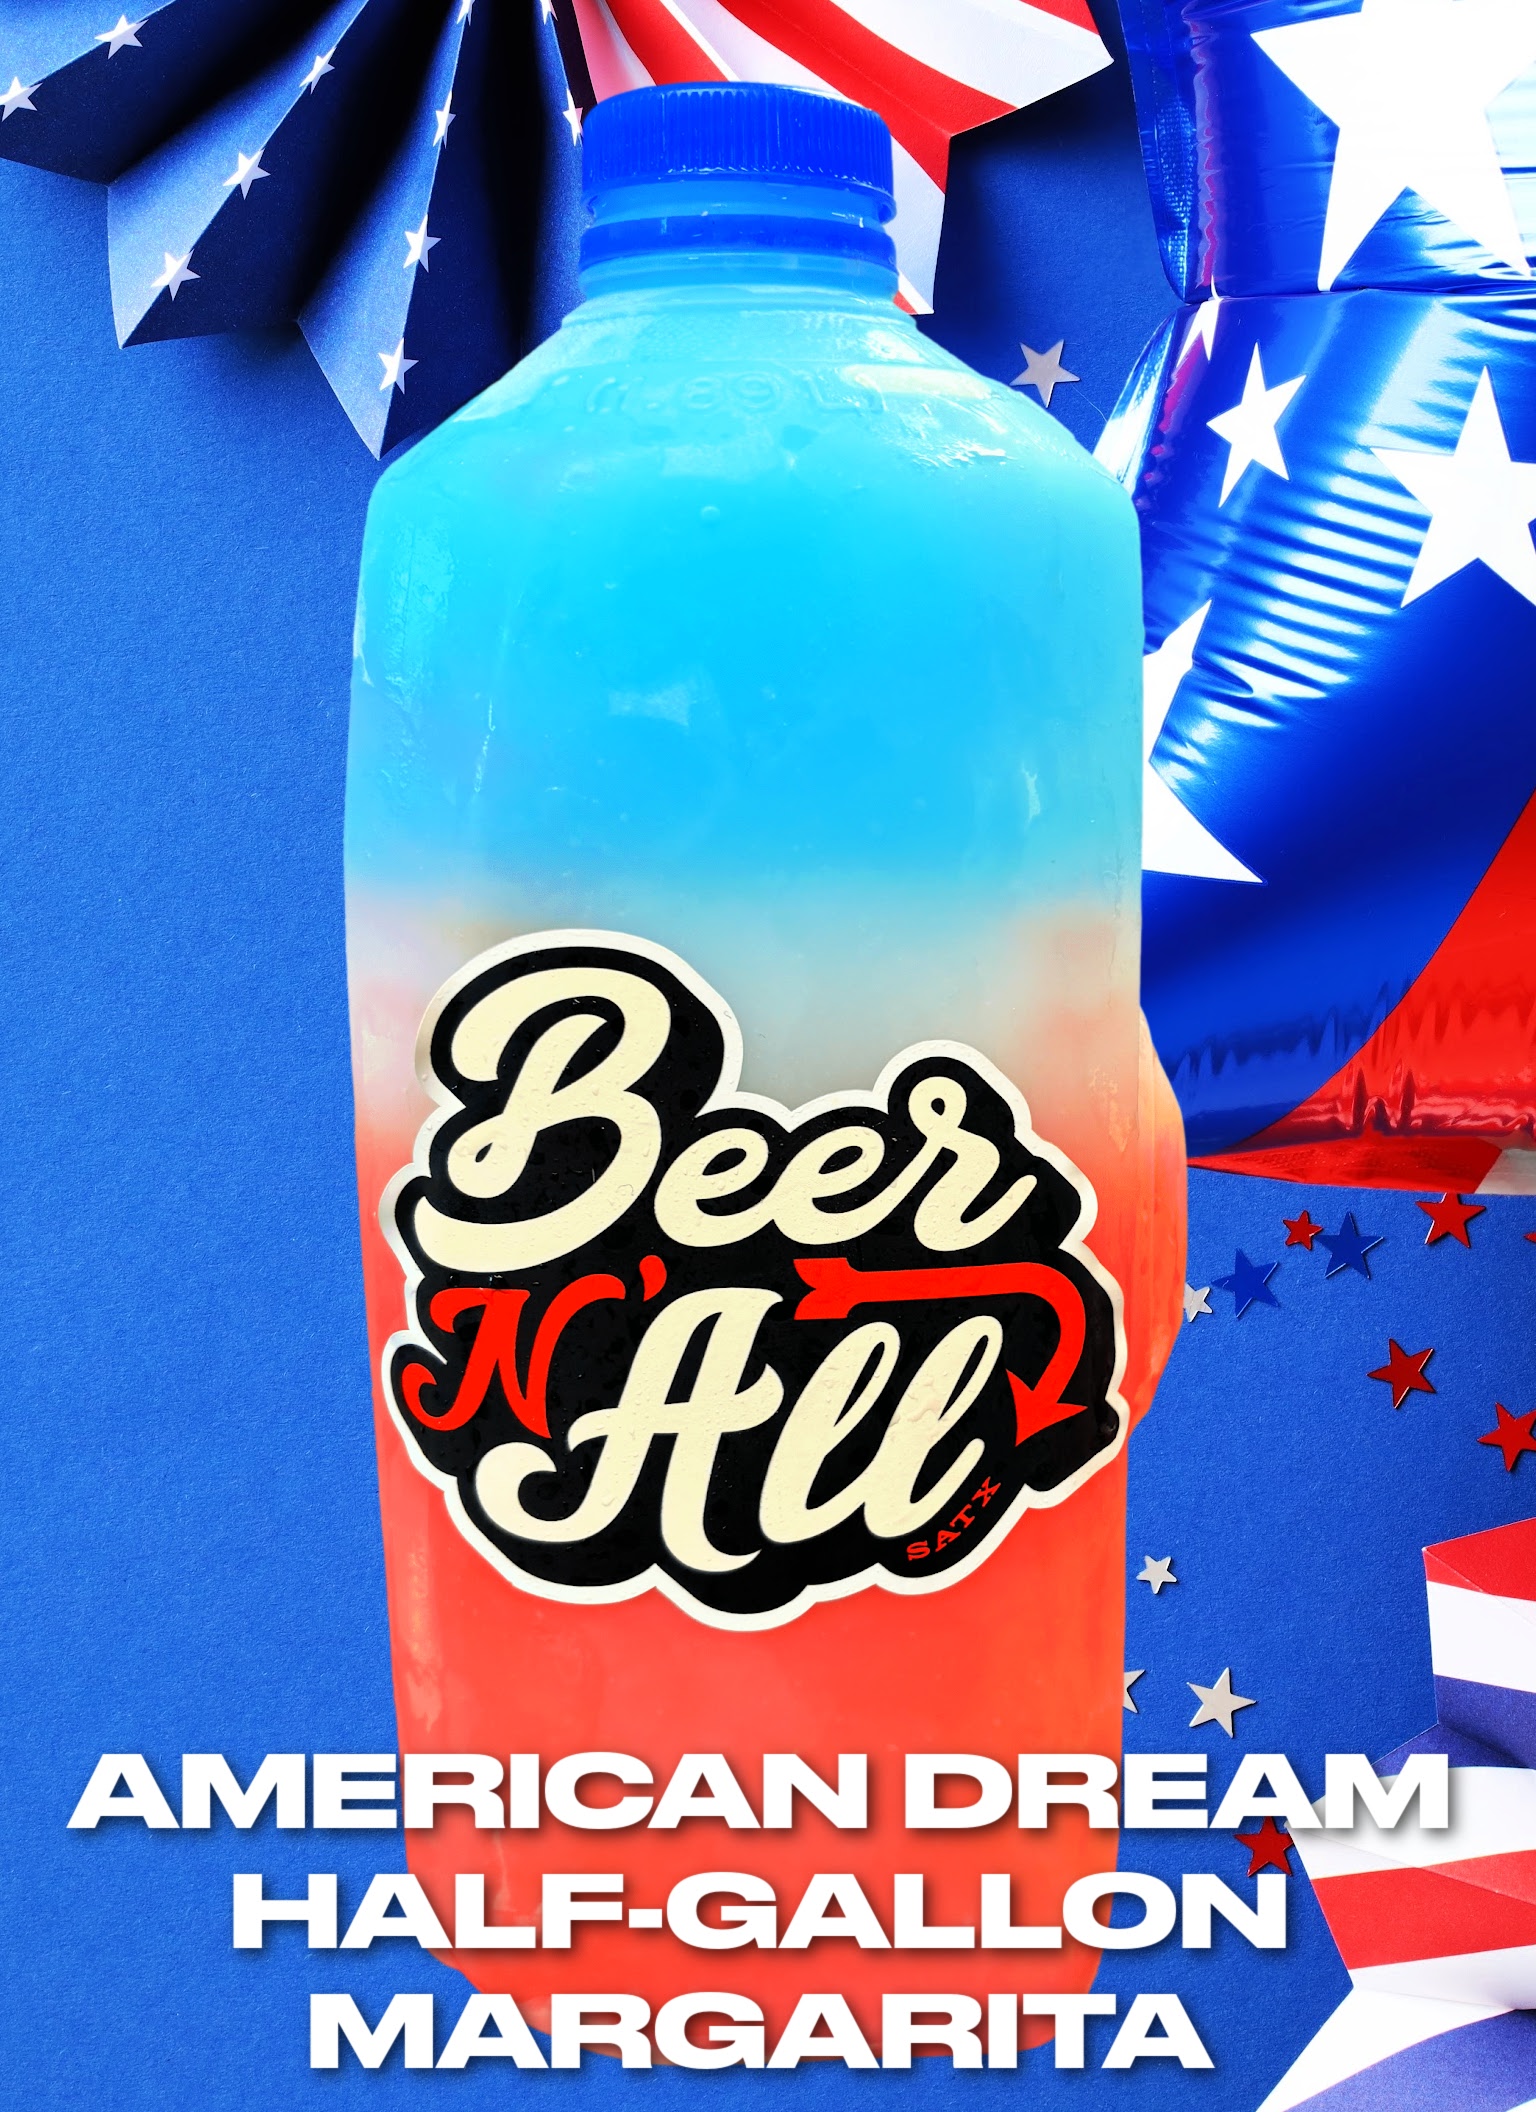 American Dream Half-Gallon Margarita